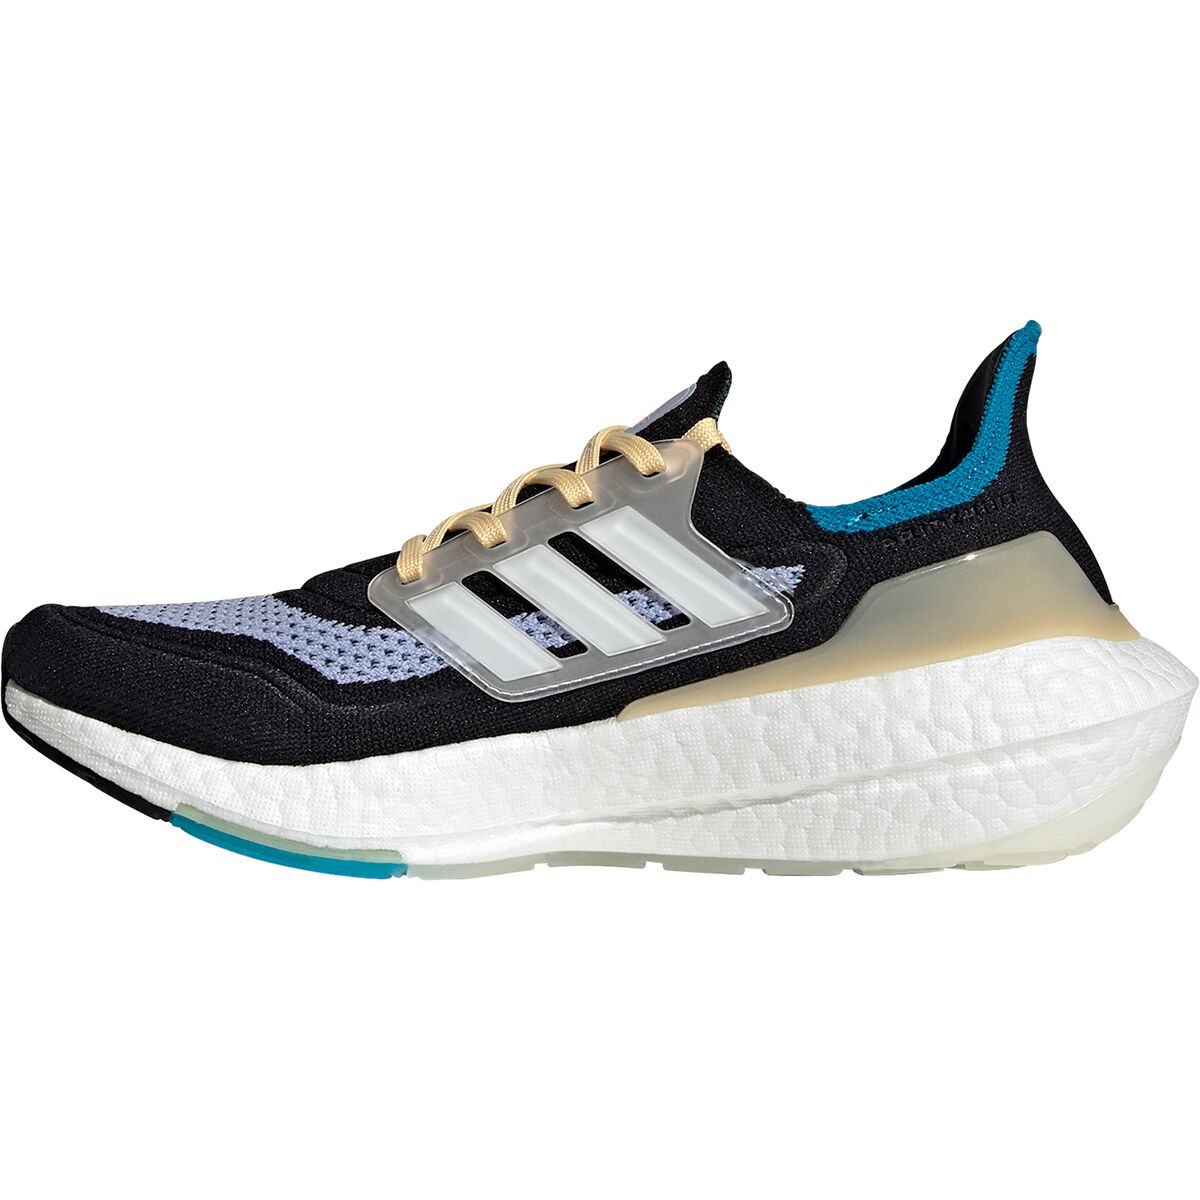 Adidas Ultraboost 21 Running Shoe - Women's - Footwear